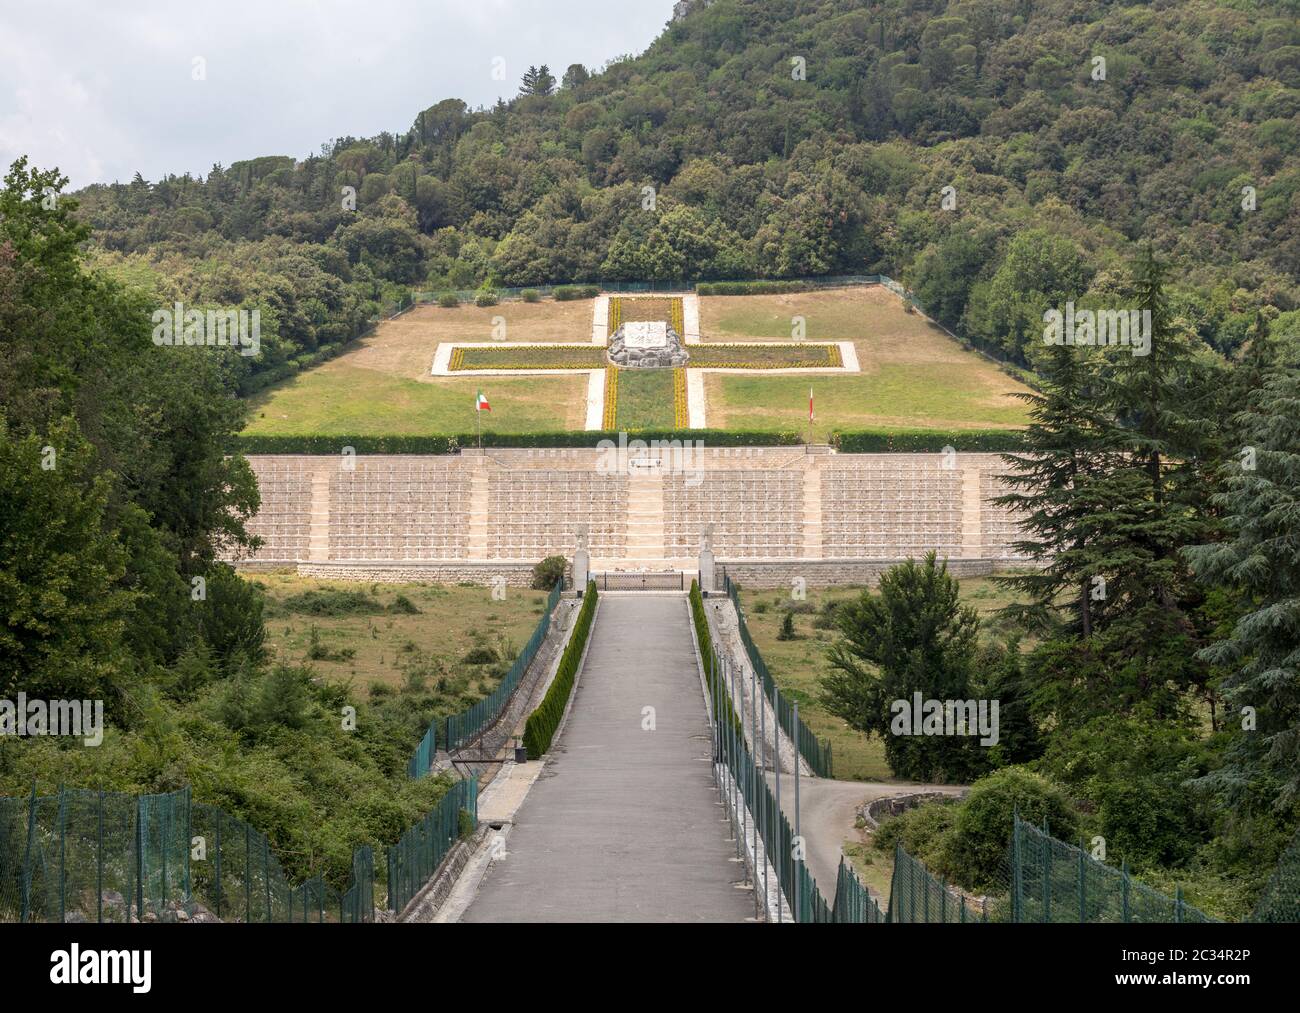 Monte Cassino, Italia - Junio 17, 2017: el cementerio de guerra polaco en Monte Cassino, una necrópolis de soldados polacos que murieron en la batalla de Monte Cassino f Foto de stock